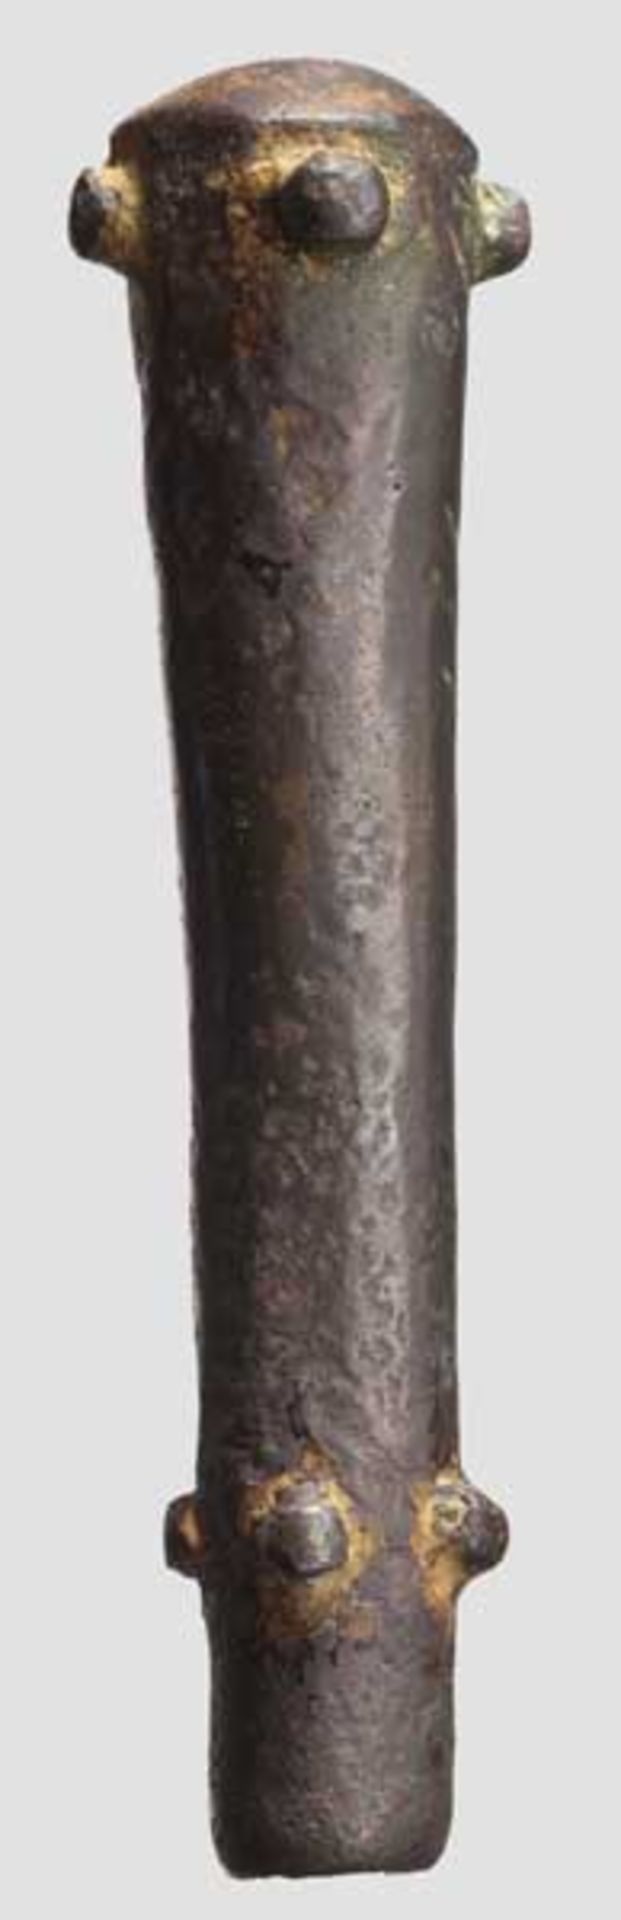 Stangenkeule, östlicher Mittelmeerraum, 2. Jtsd. v. Chr.   Rötliche Bronze mit brauner Patina.